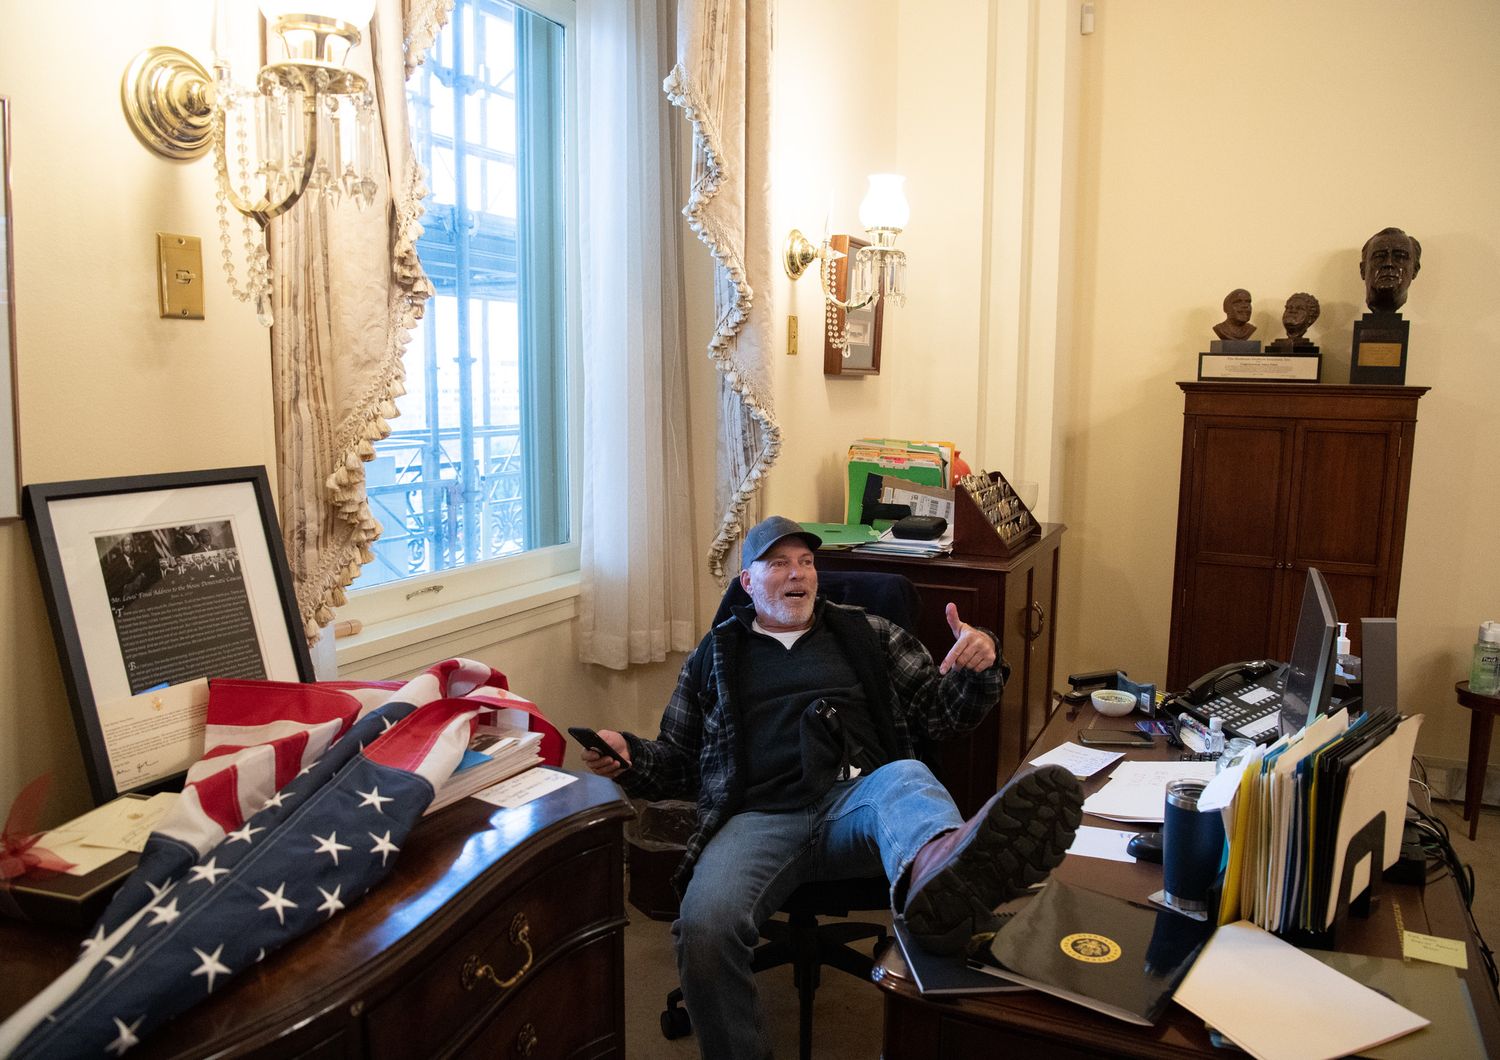 Un manifestante si &egrave; fatto fotografare nella stanza di Nancy Pelosi con i piedi sulla sua scrivania